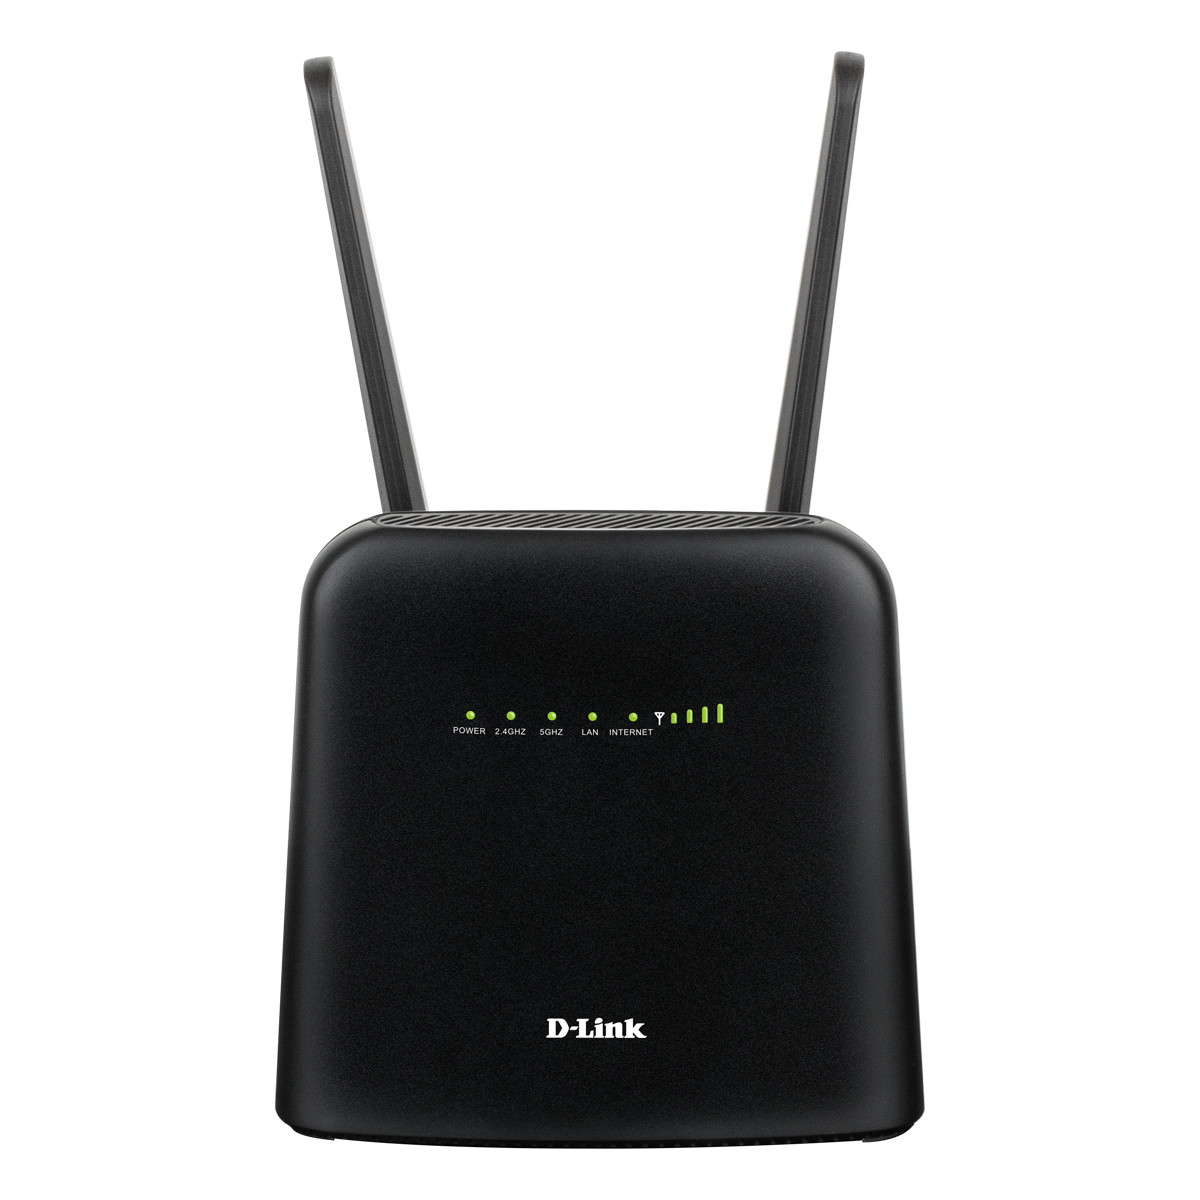 D-Link DWR-960 4G LTE WLAN Router AC1200 Dual-Band, LTE Cat7 bis zu 300 Mbit/s, 2x GbE LAN von D-Link